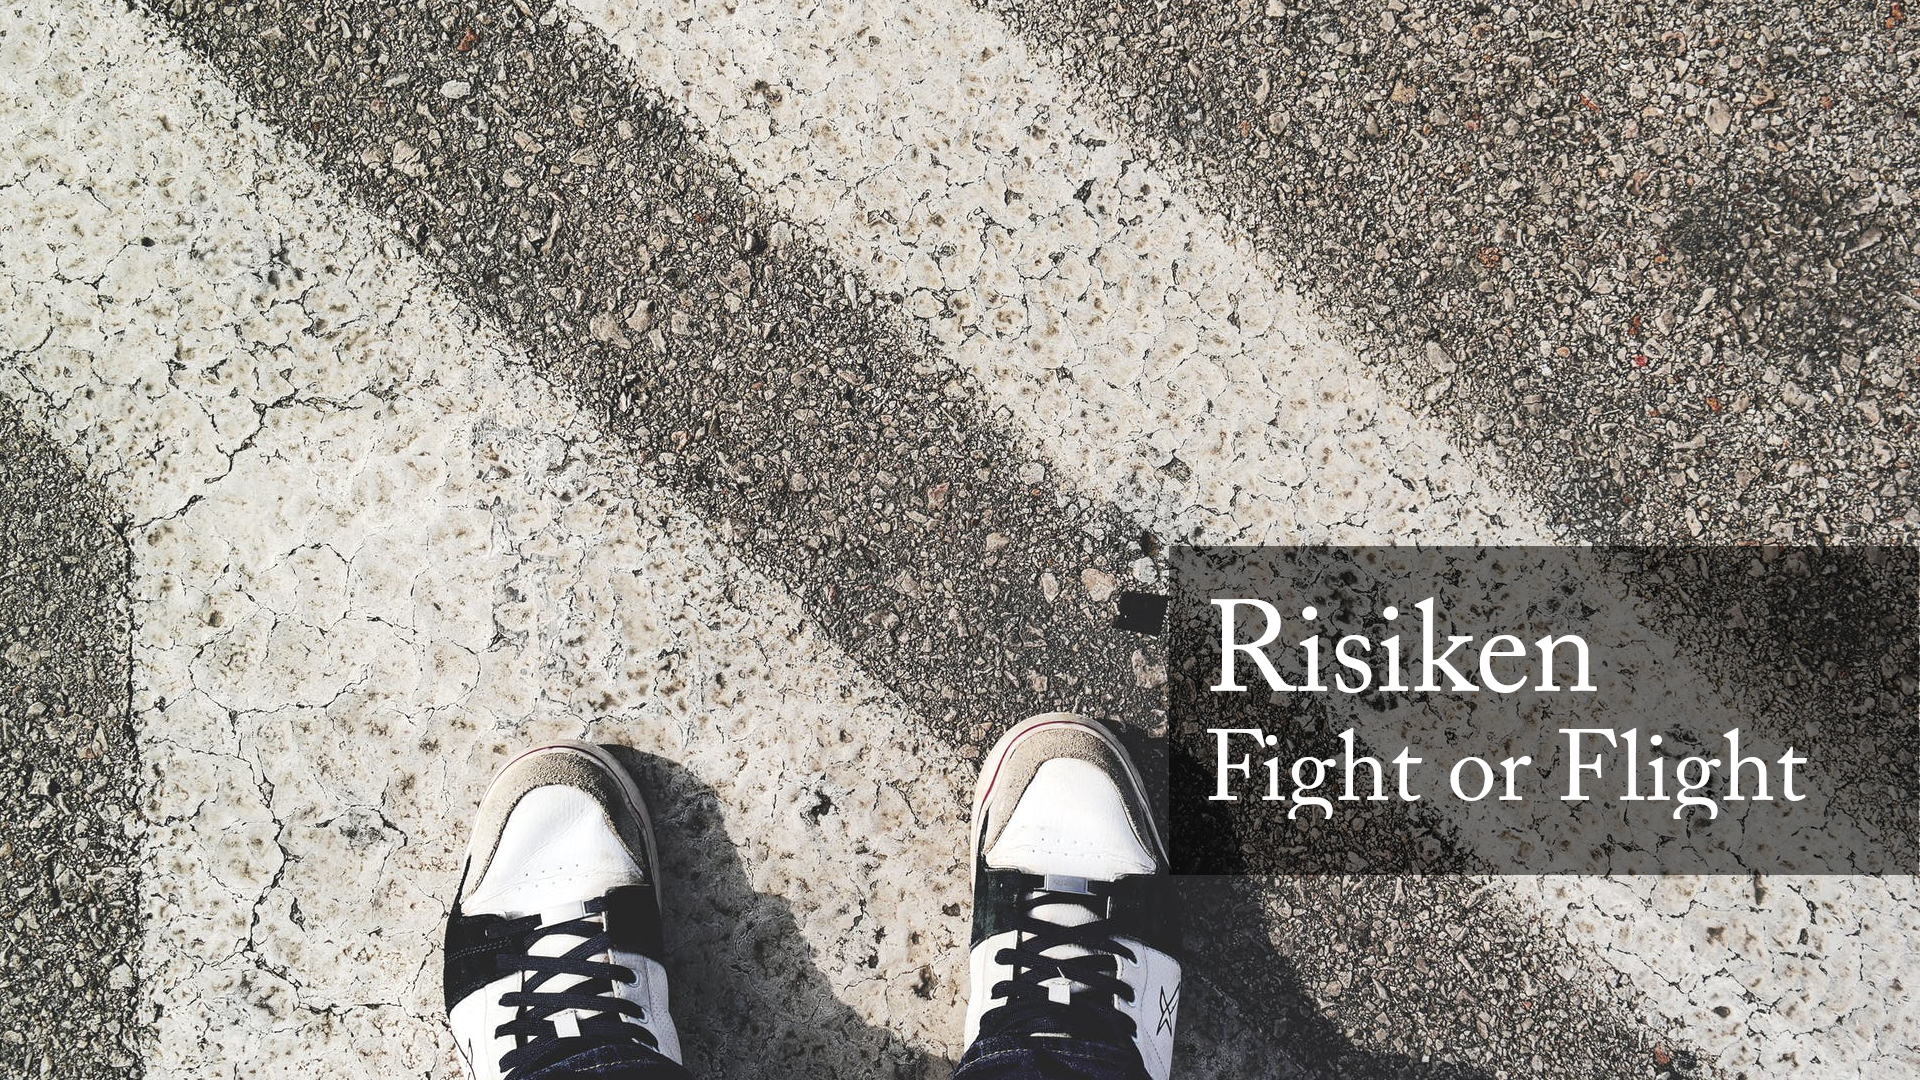 Sind Sie bei Risiken der Fight oder Flight Typ?